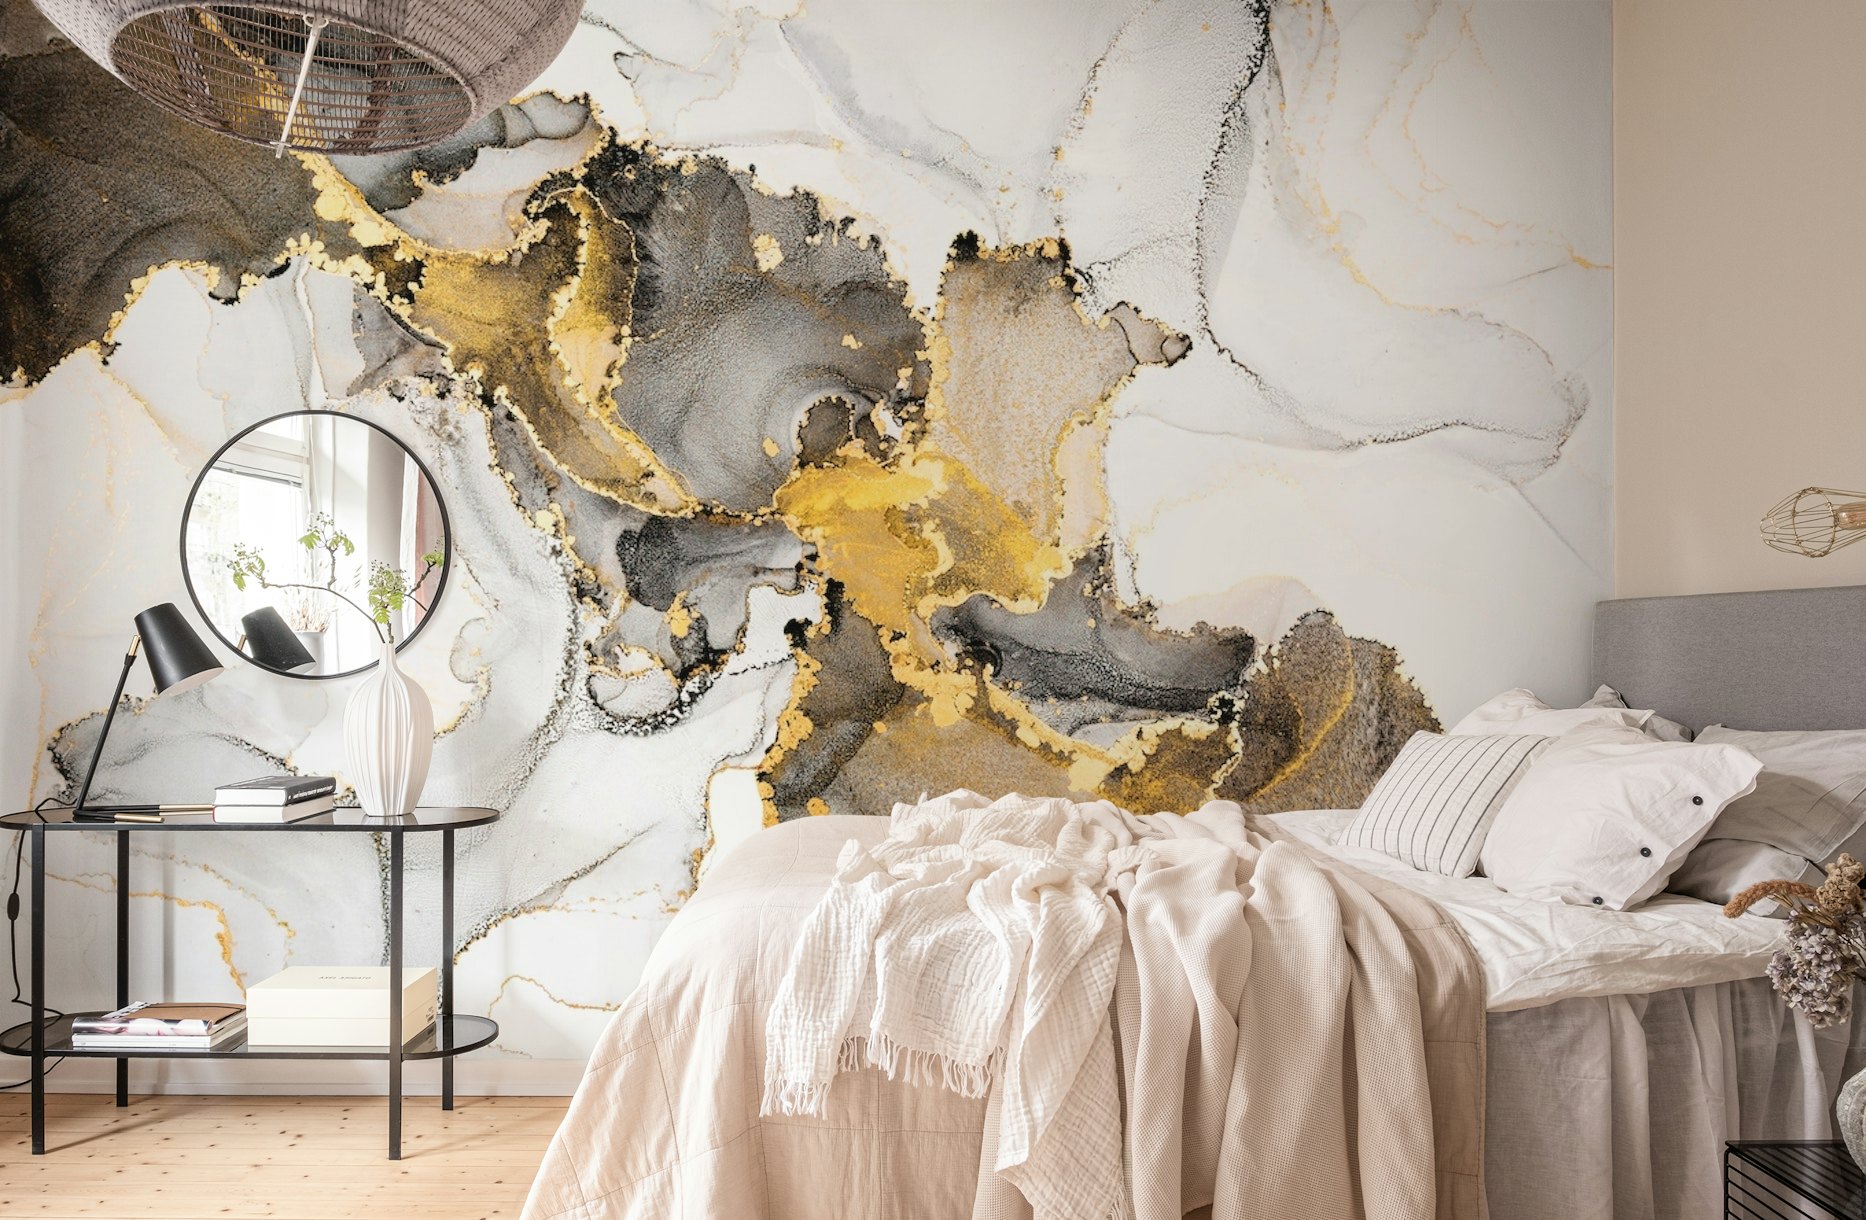 Luxury fluid art paint wallpaper